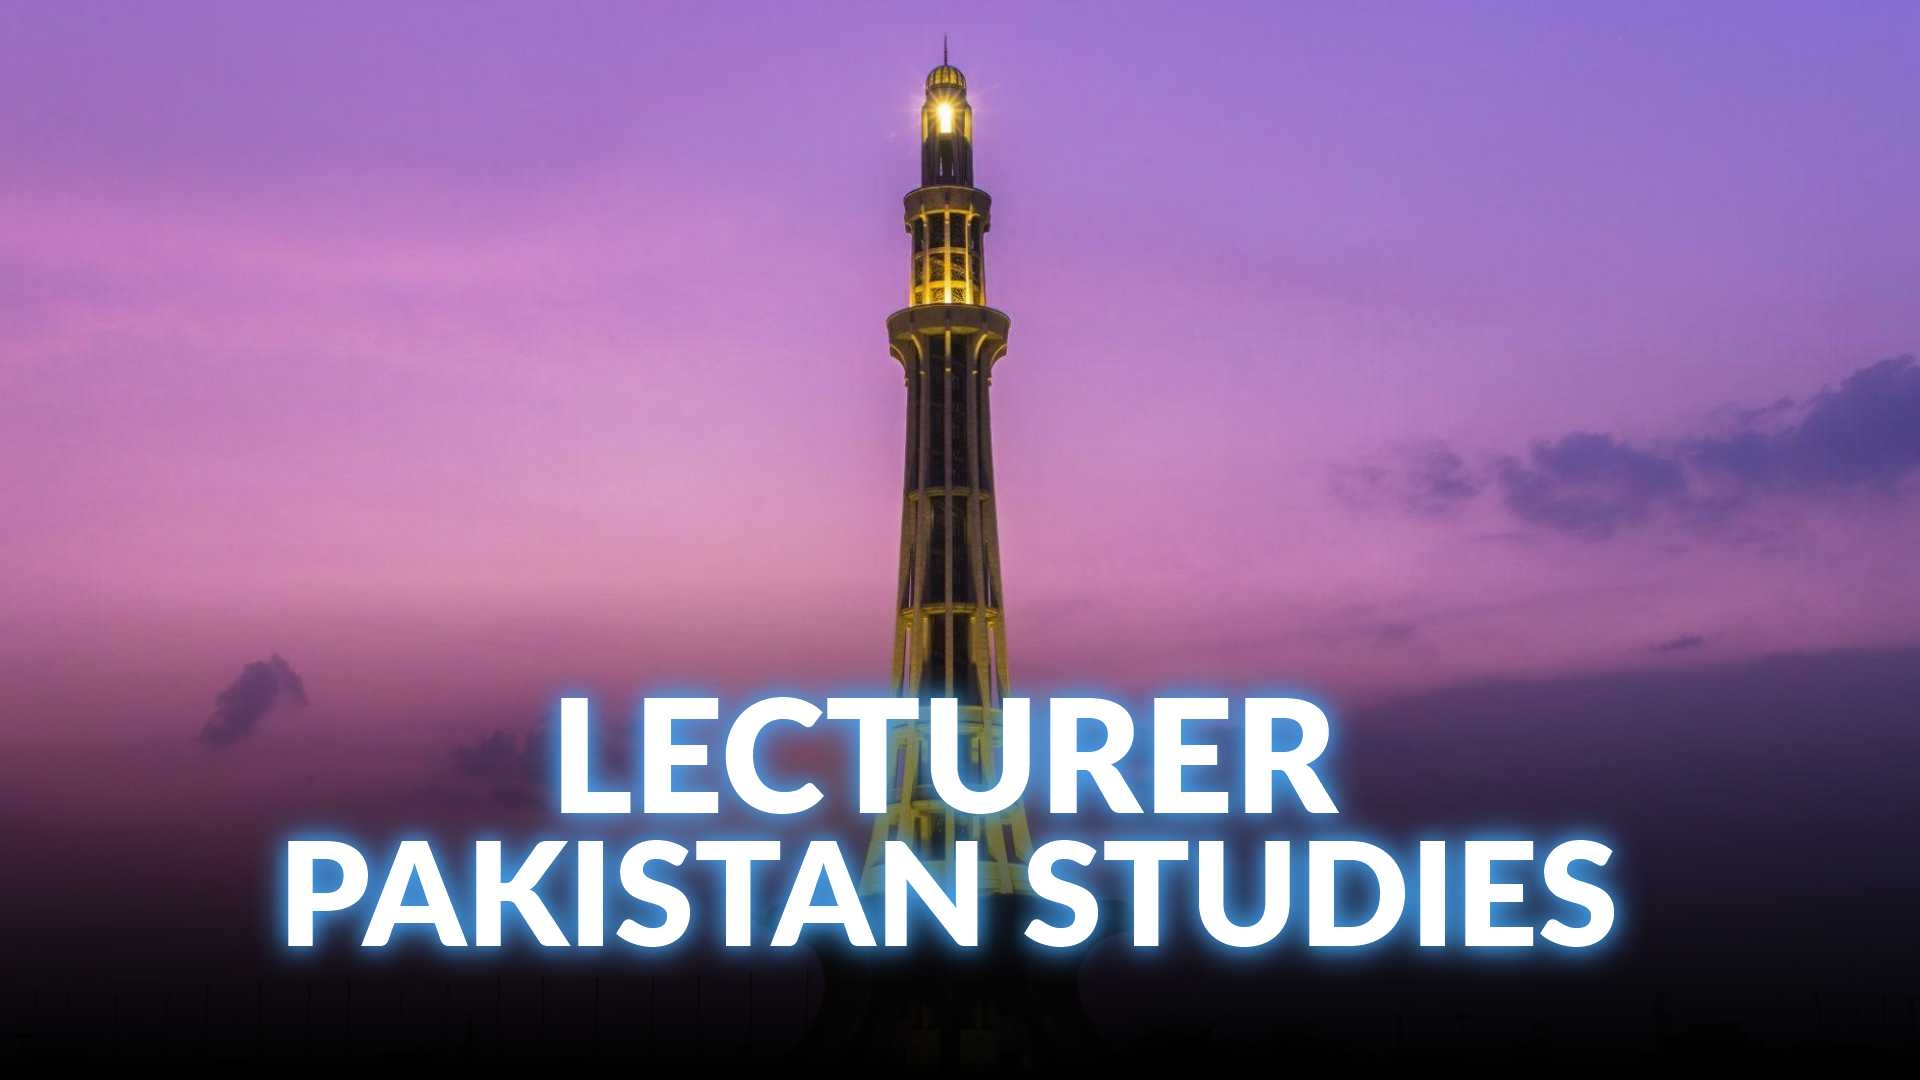 KPPSC lecturers Pakistan Studies Preparation Course